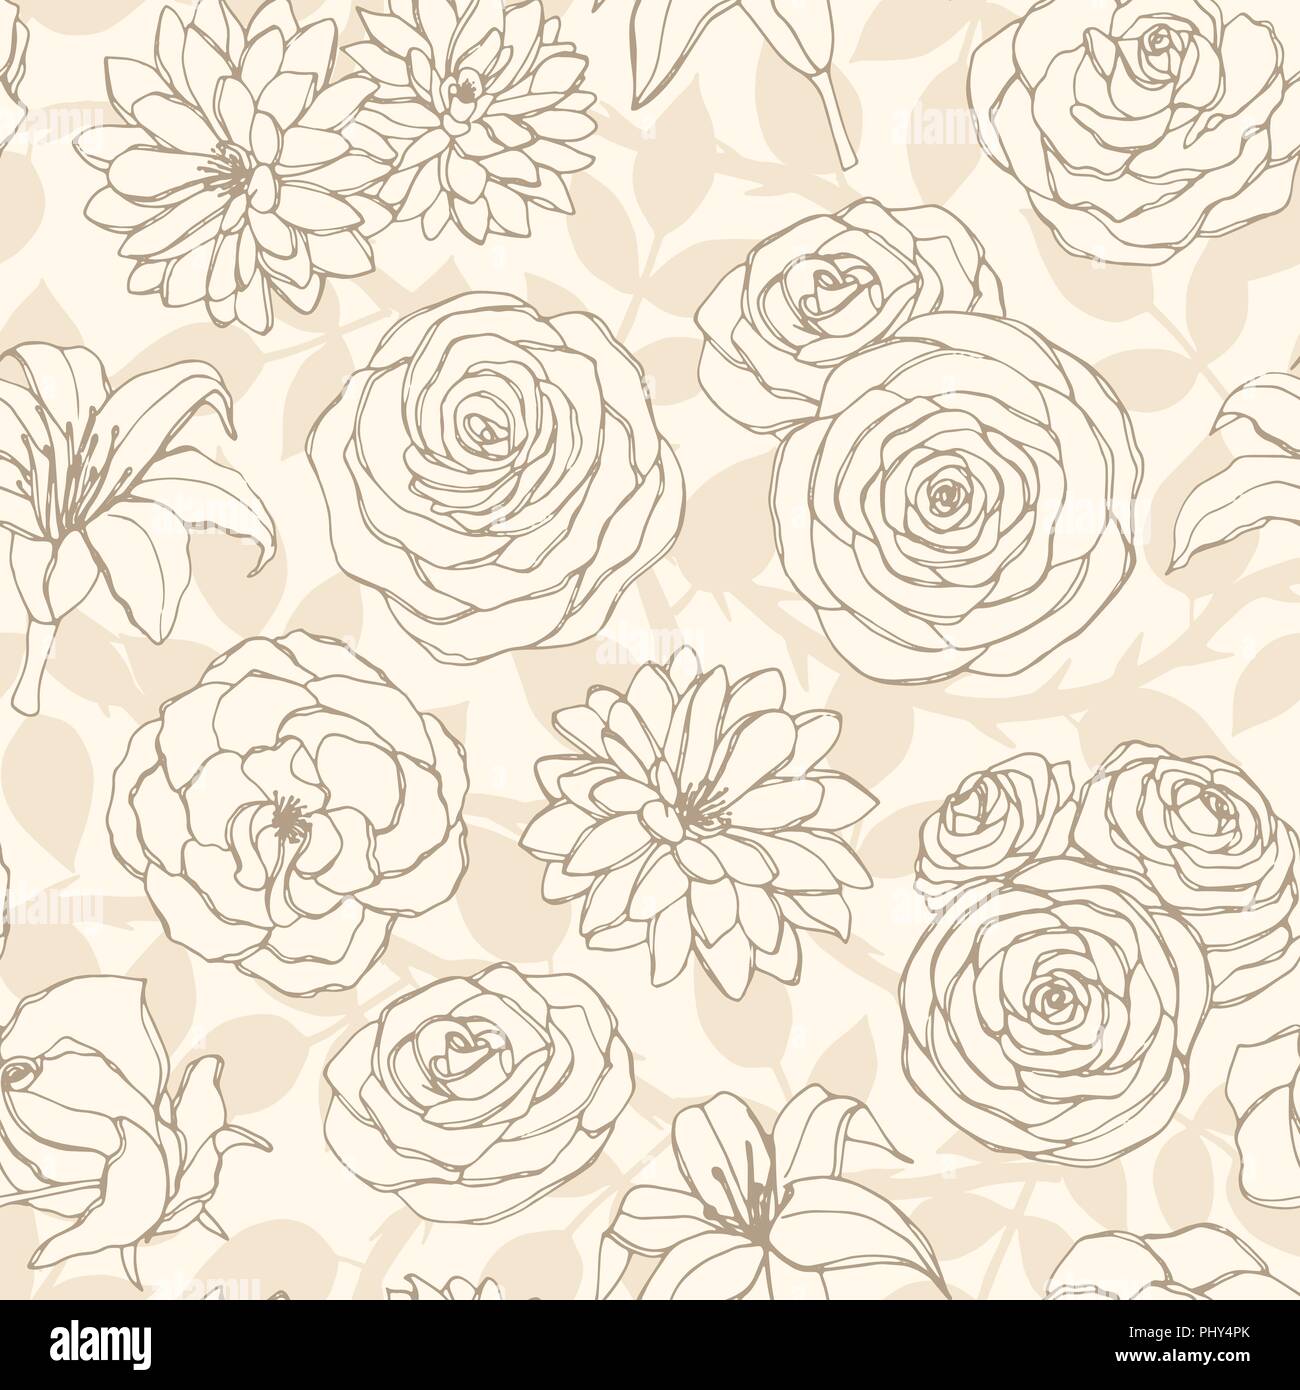 Vector patrón sin fisuras con Lily, crisantemo, camelia, peonía y rosa Flores de arte de línea en el fondo de color beige. Repita el adorno floral dibujados a mano Ilustración del Vector